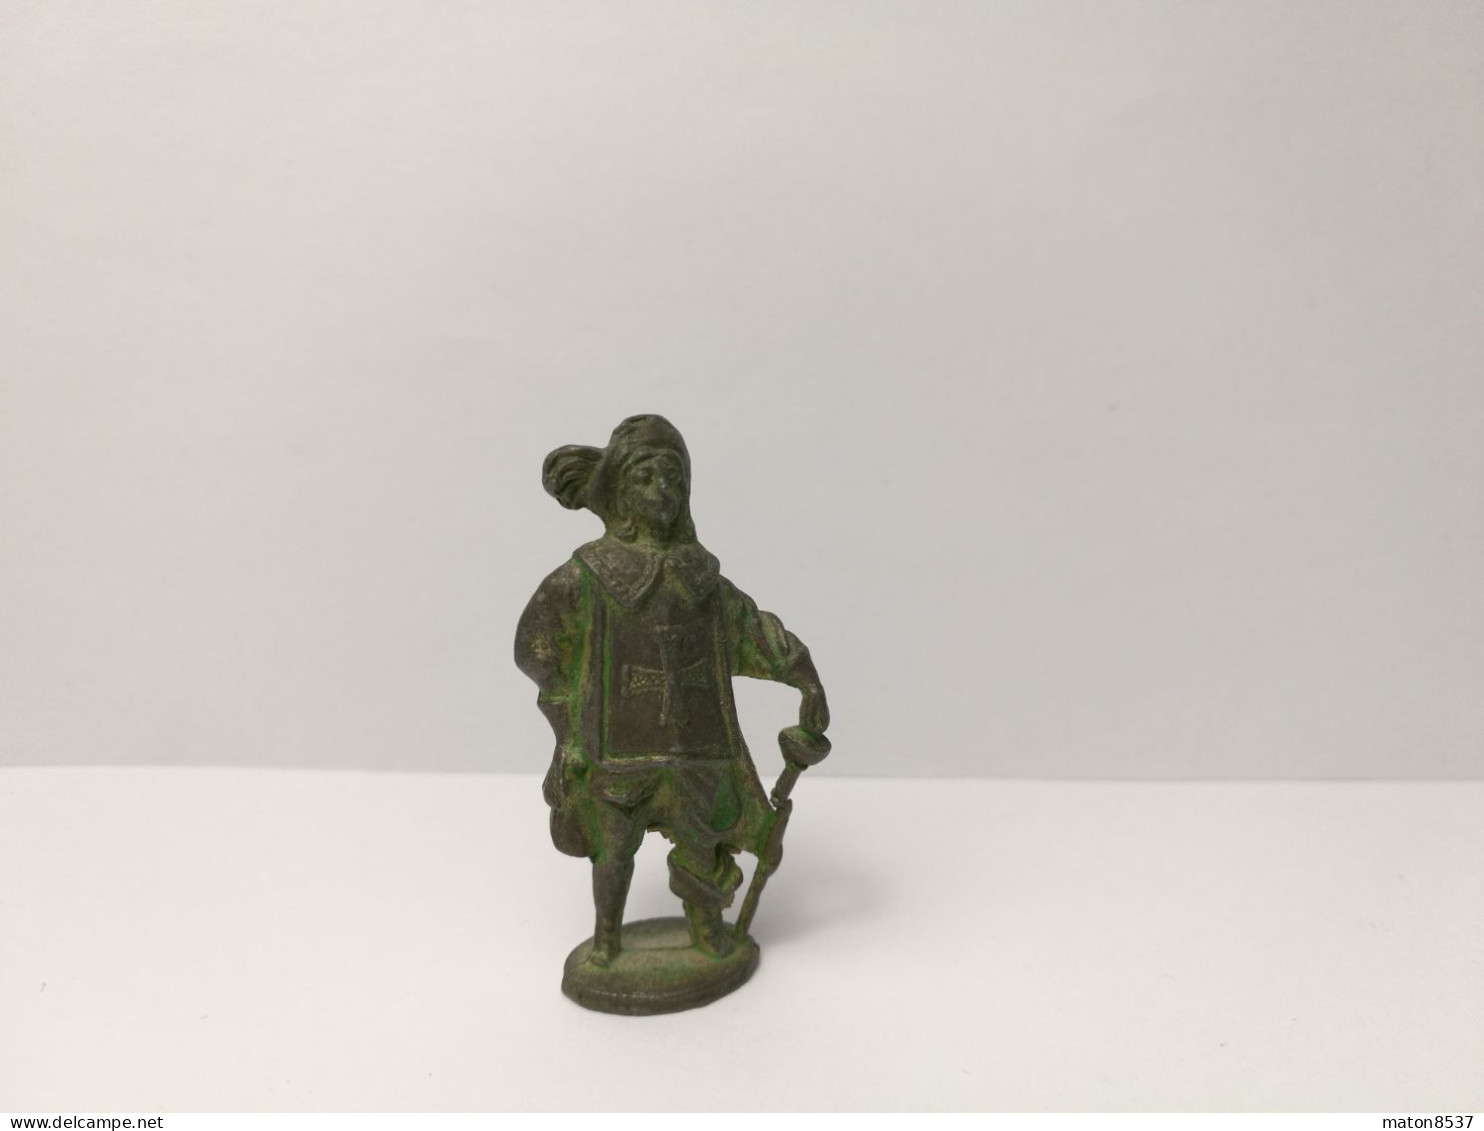 Kinder : Musketiere 1978-88 - Musketier - Franckreich 1618 - 1700 - Grünspan -ohne Kennung - 40 Mm - 6 - Metal Figurines